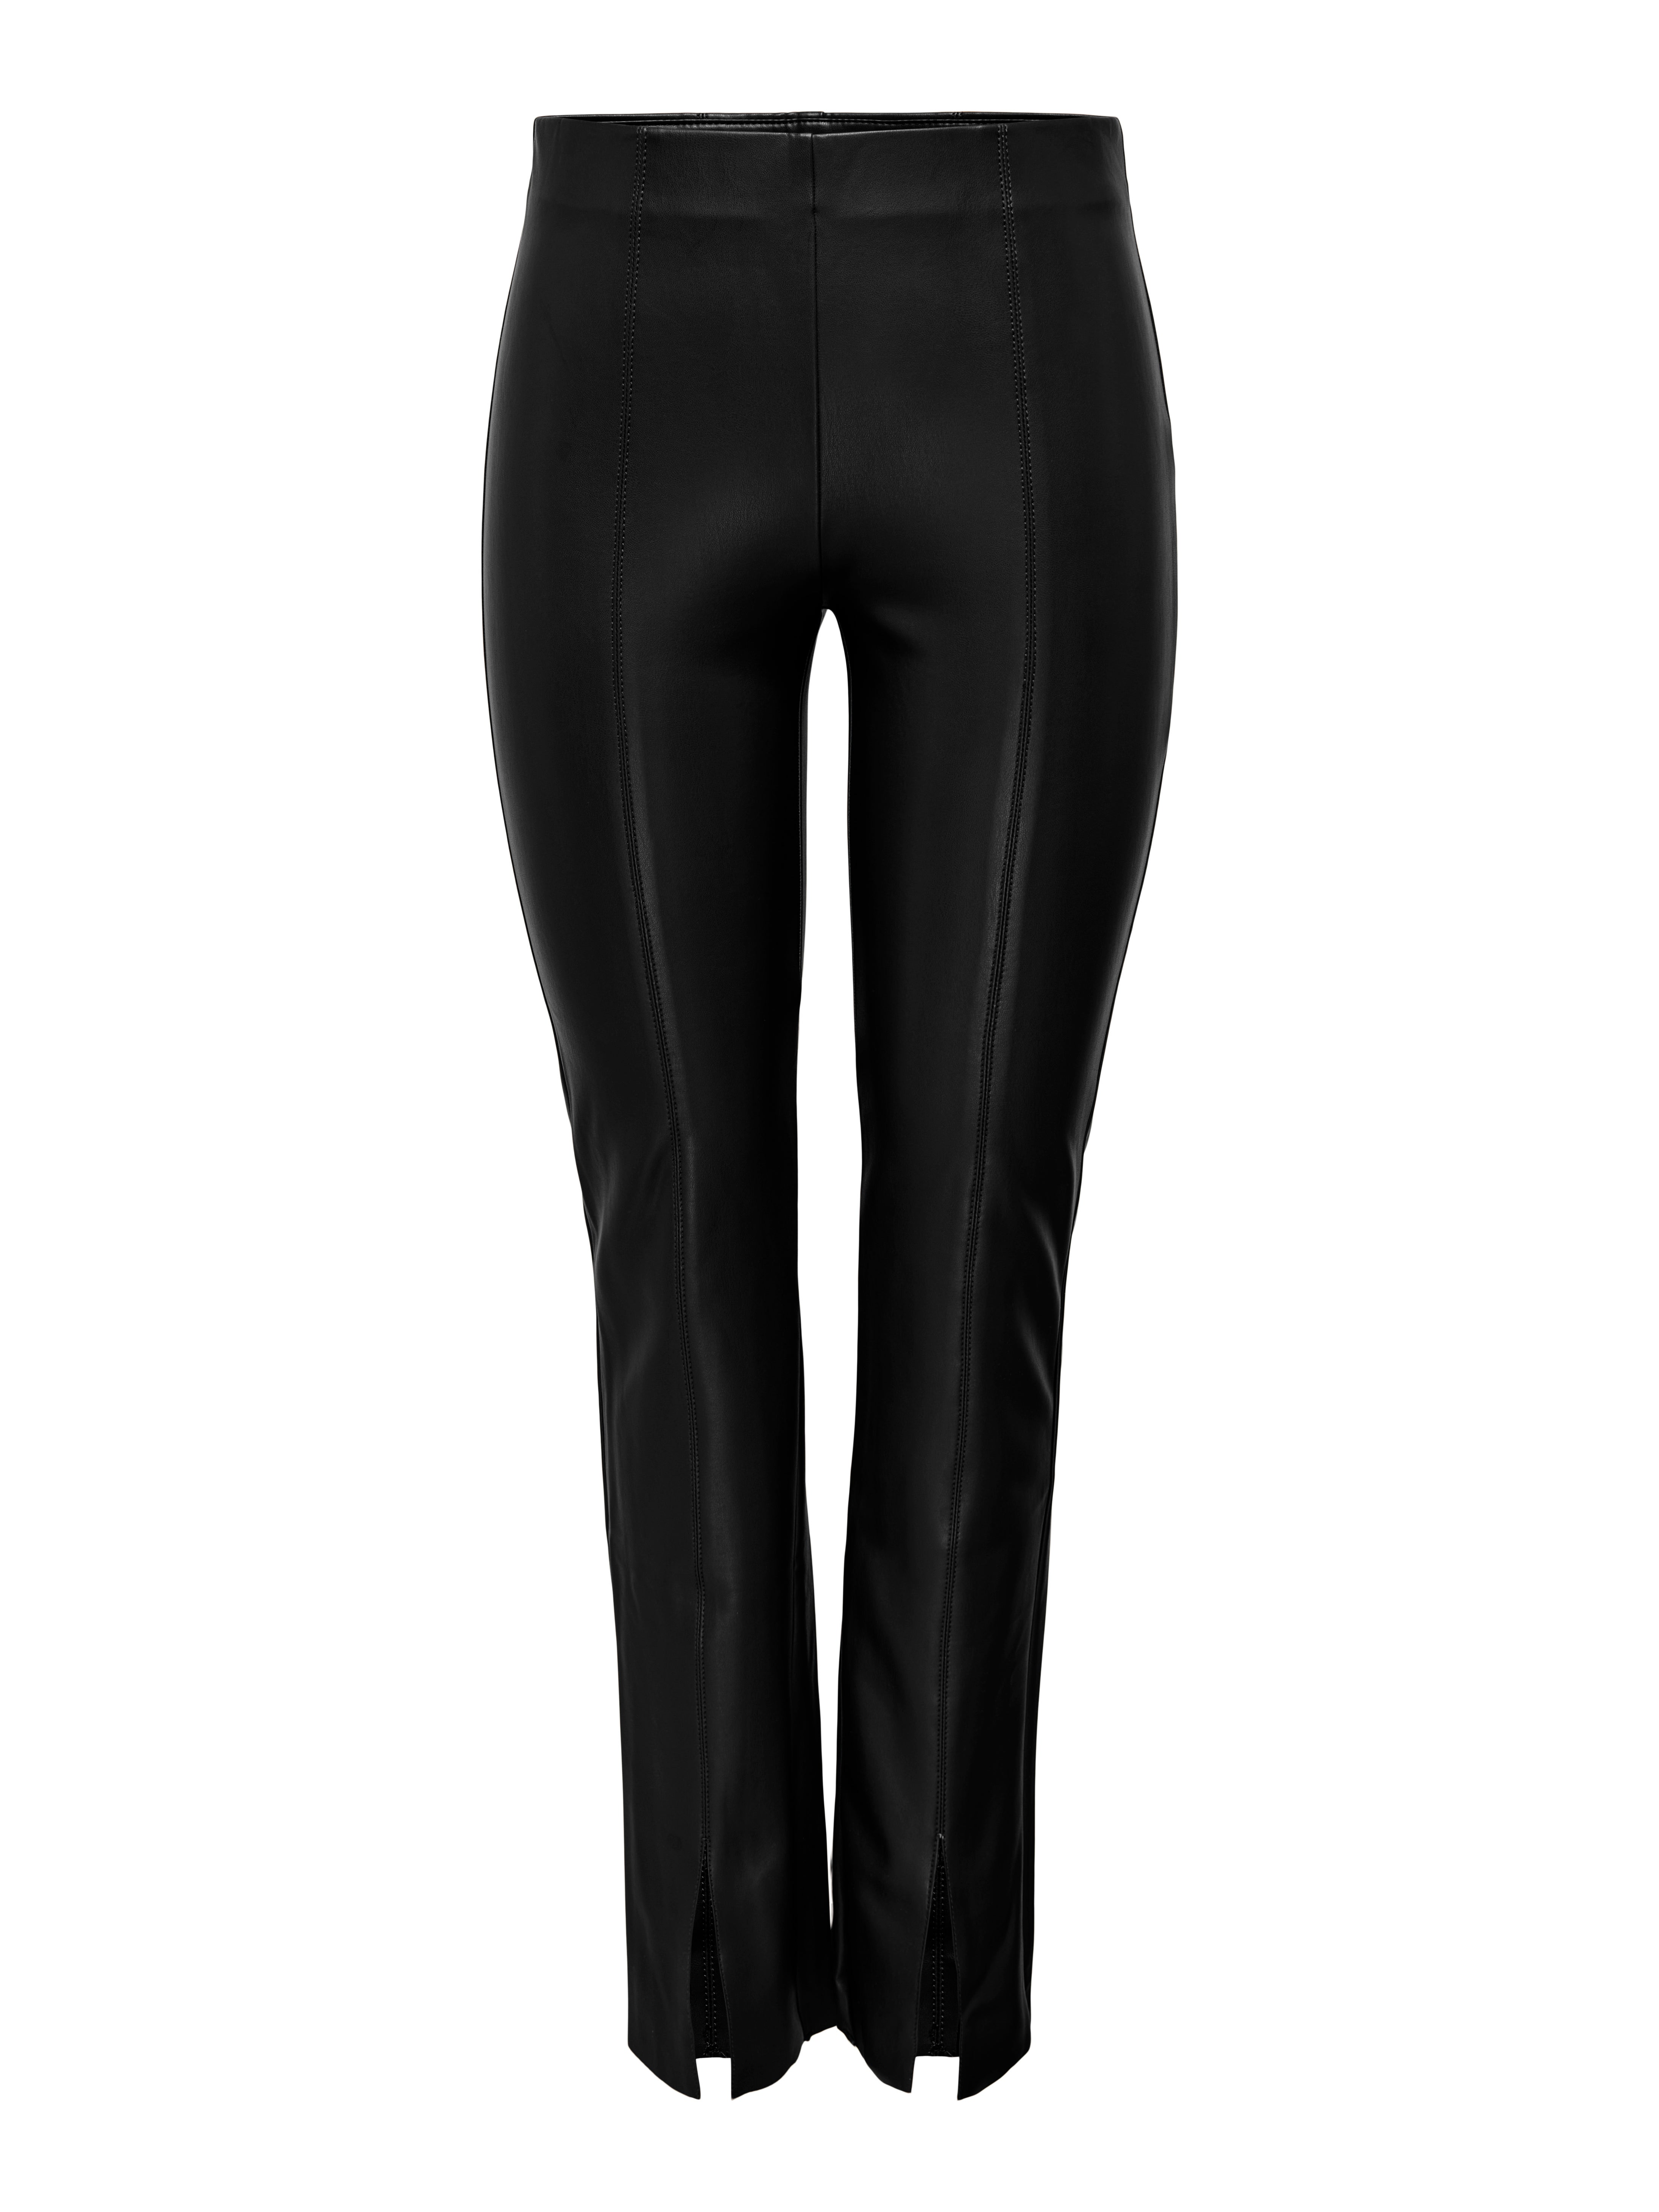 H&M+ V-waist leggings - Black - Ladies